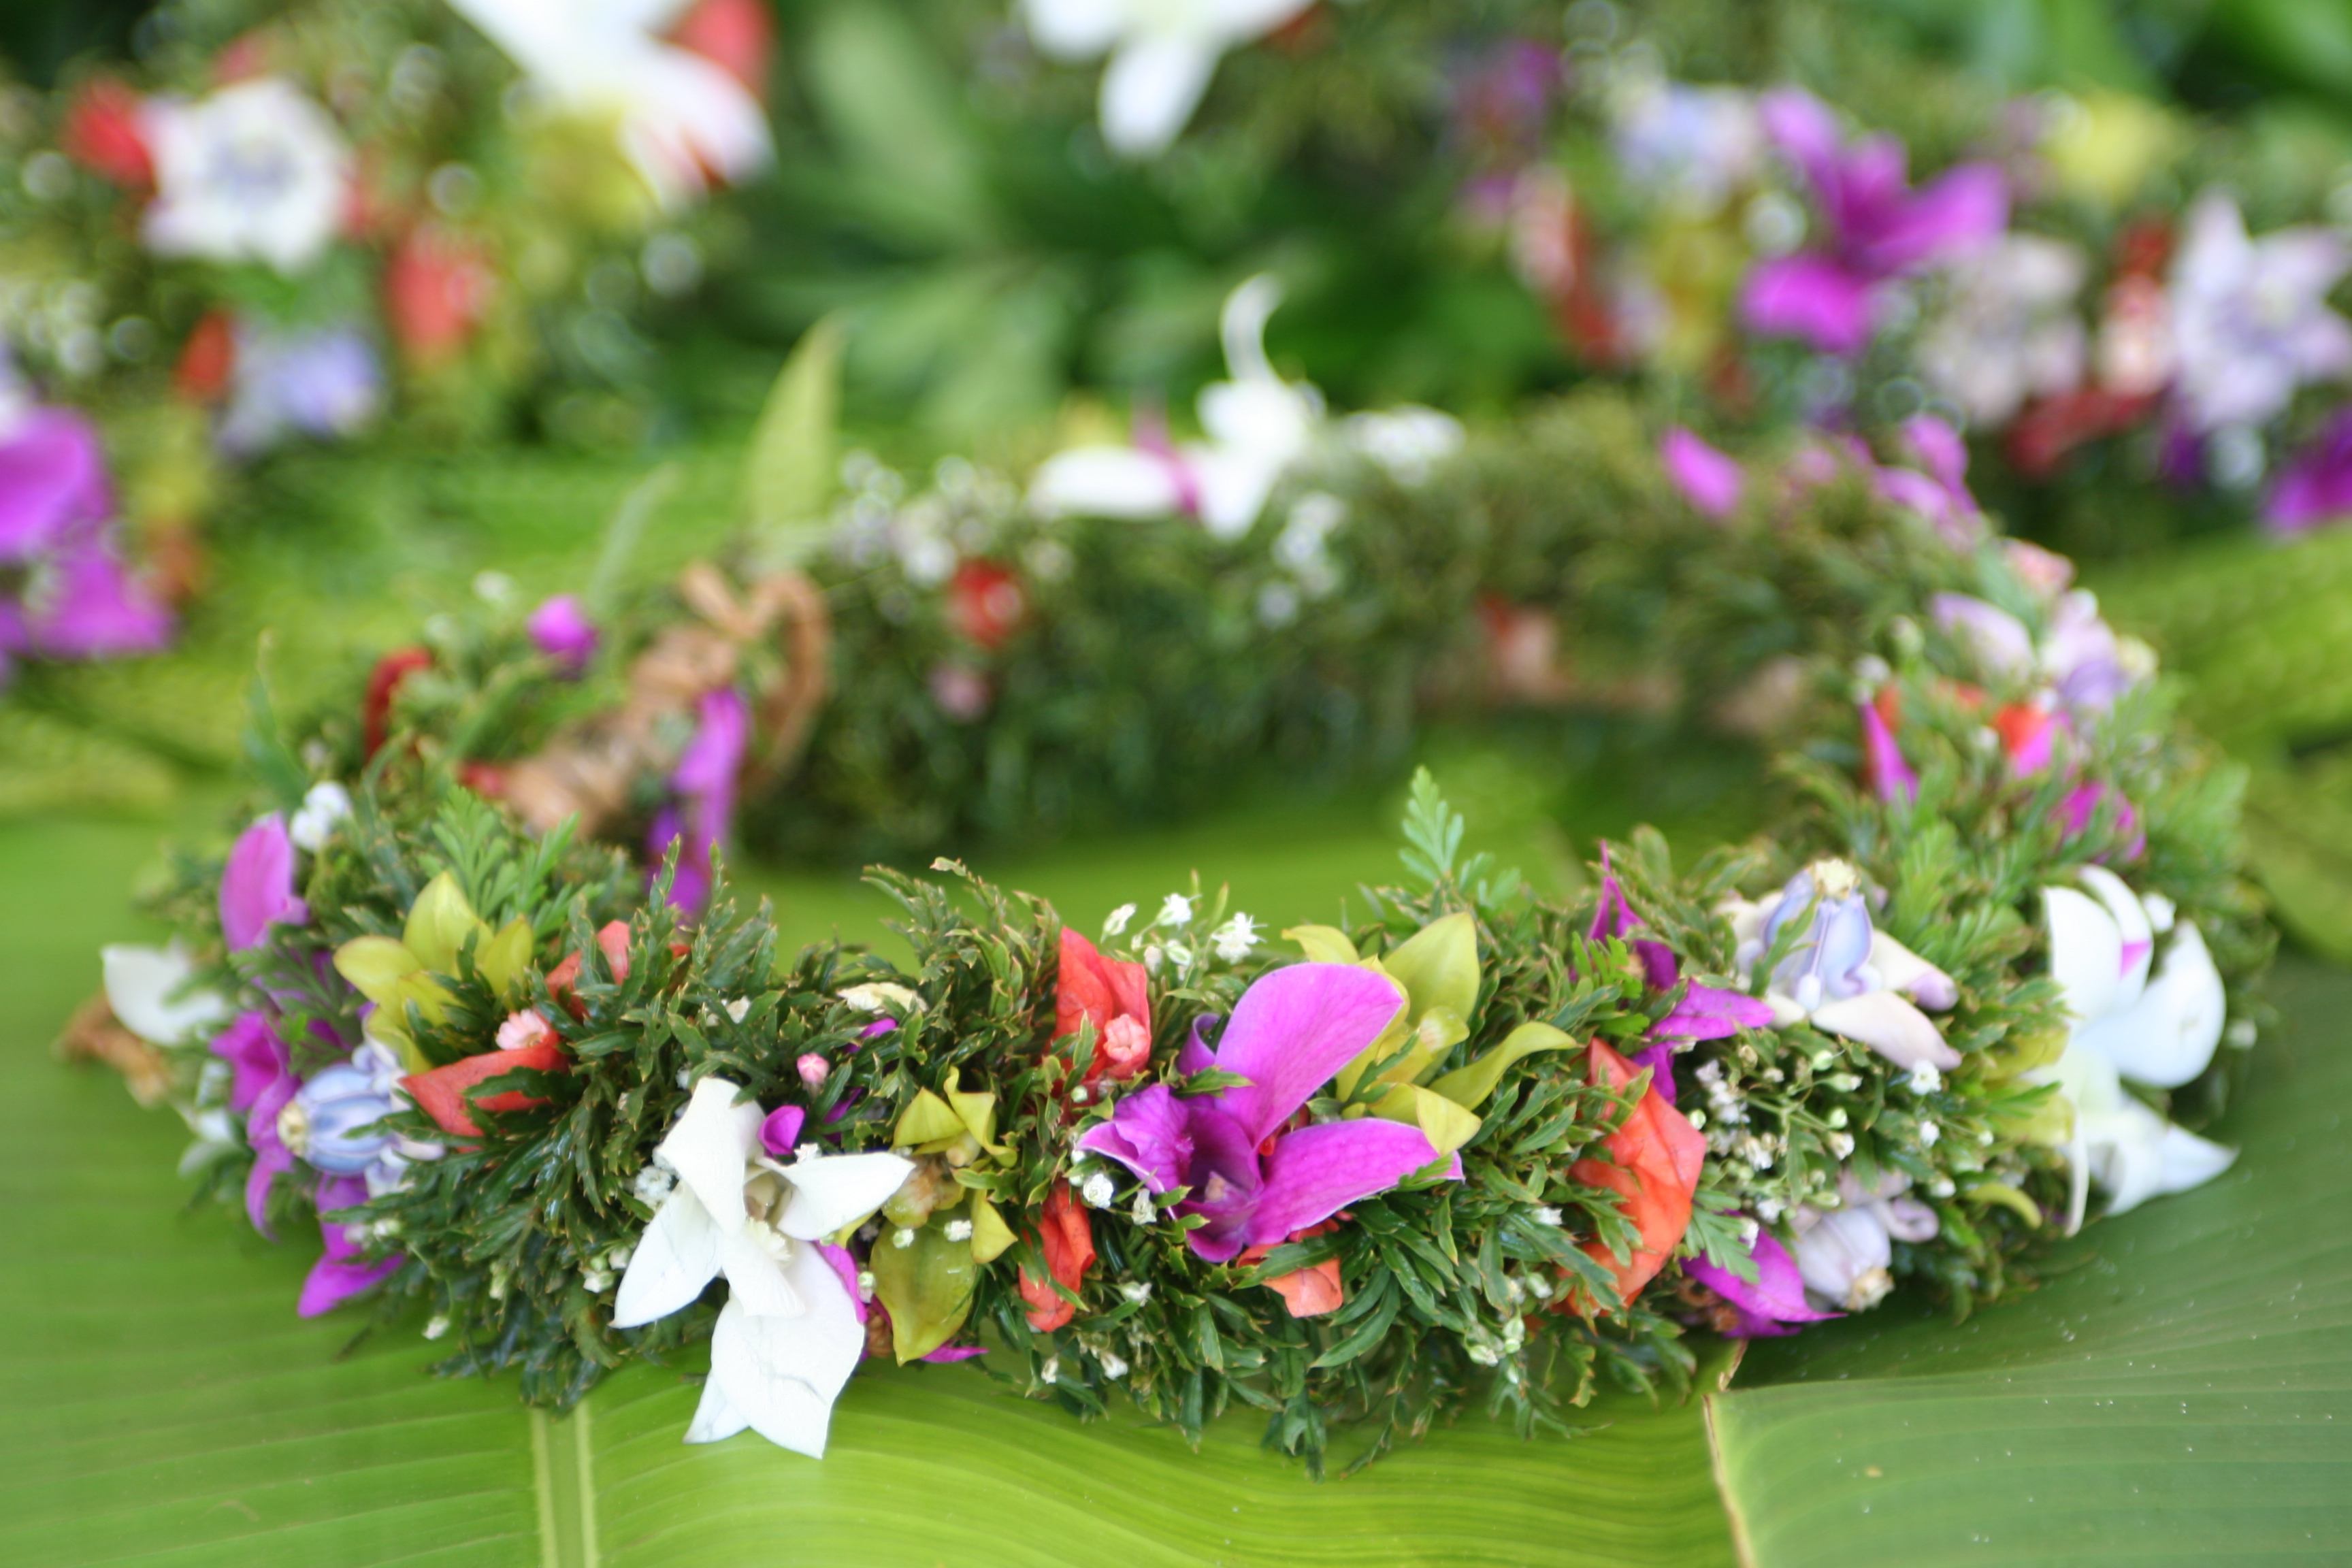 ハワイ最大級の伝統的祭典アロハ・フェスティバル2019